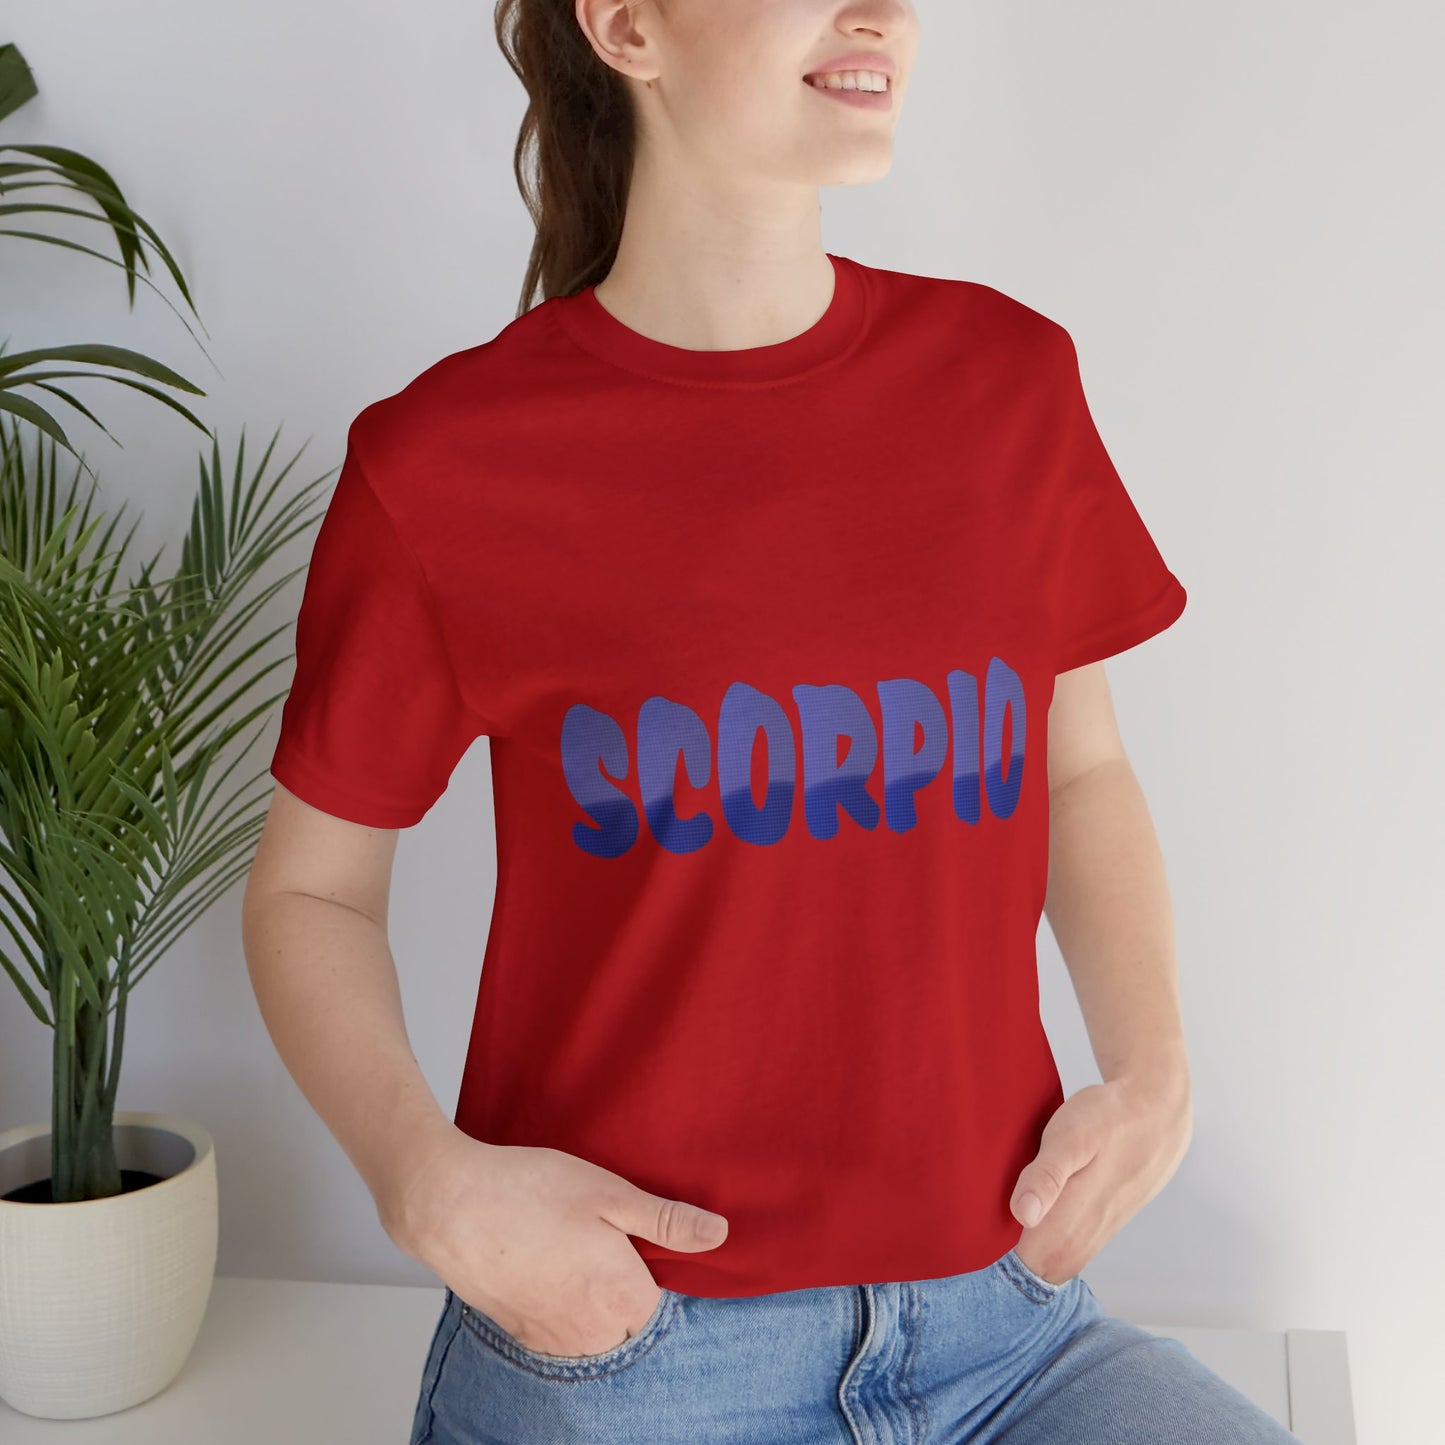 Scorpio T-shirt word